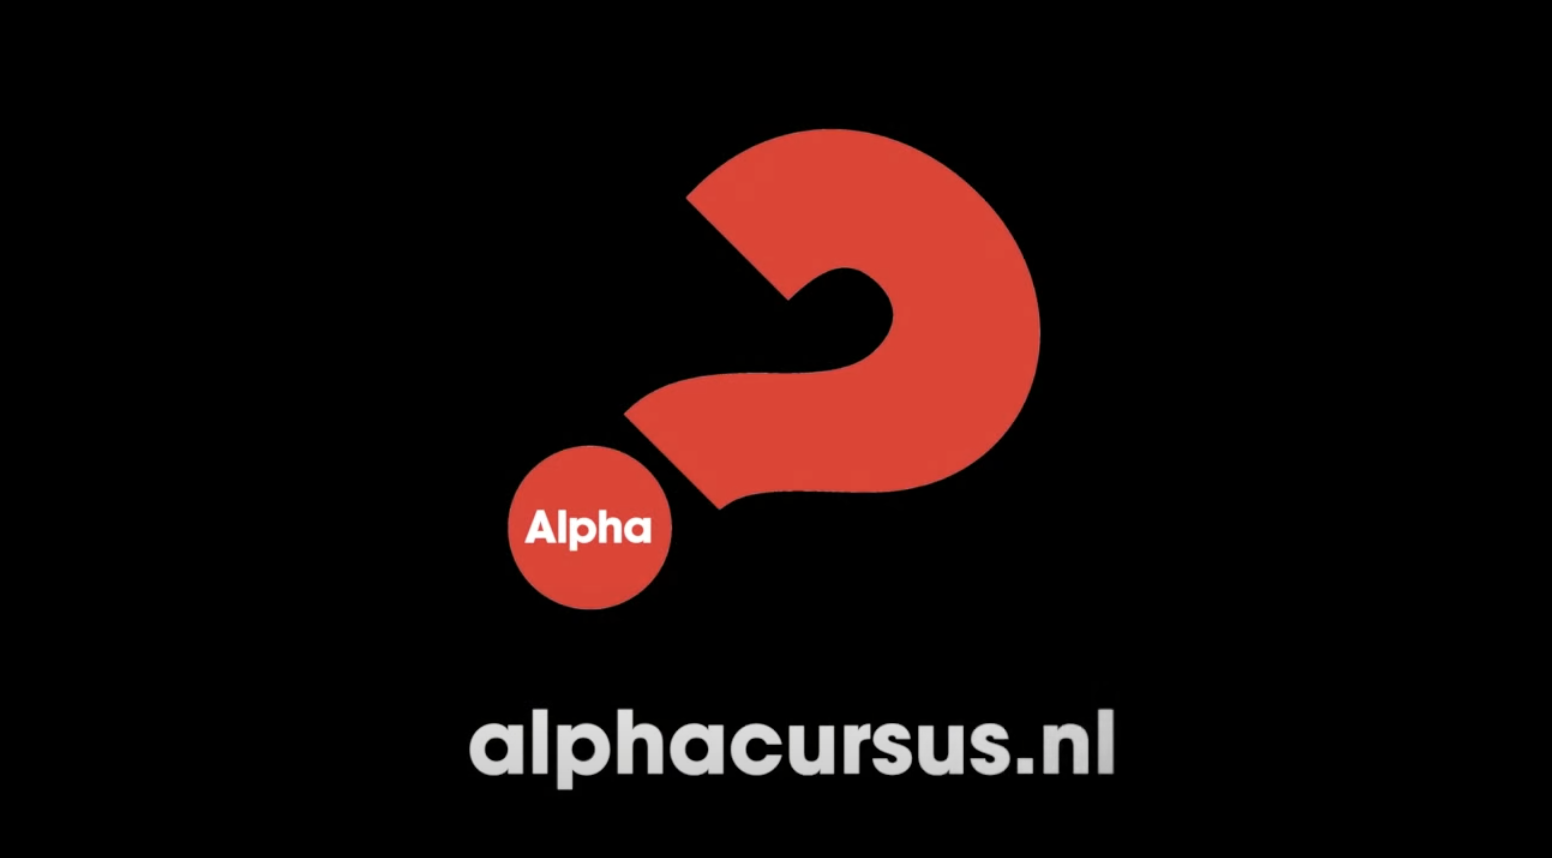 Alphacursus